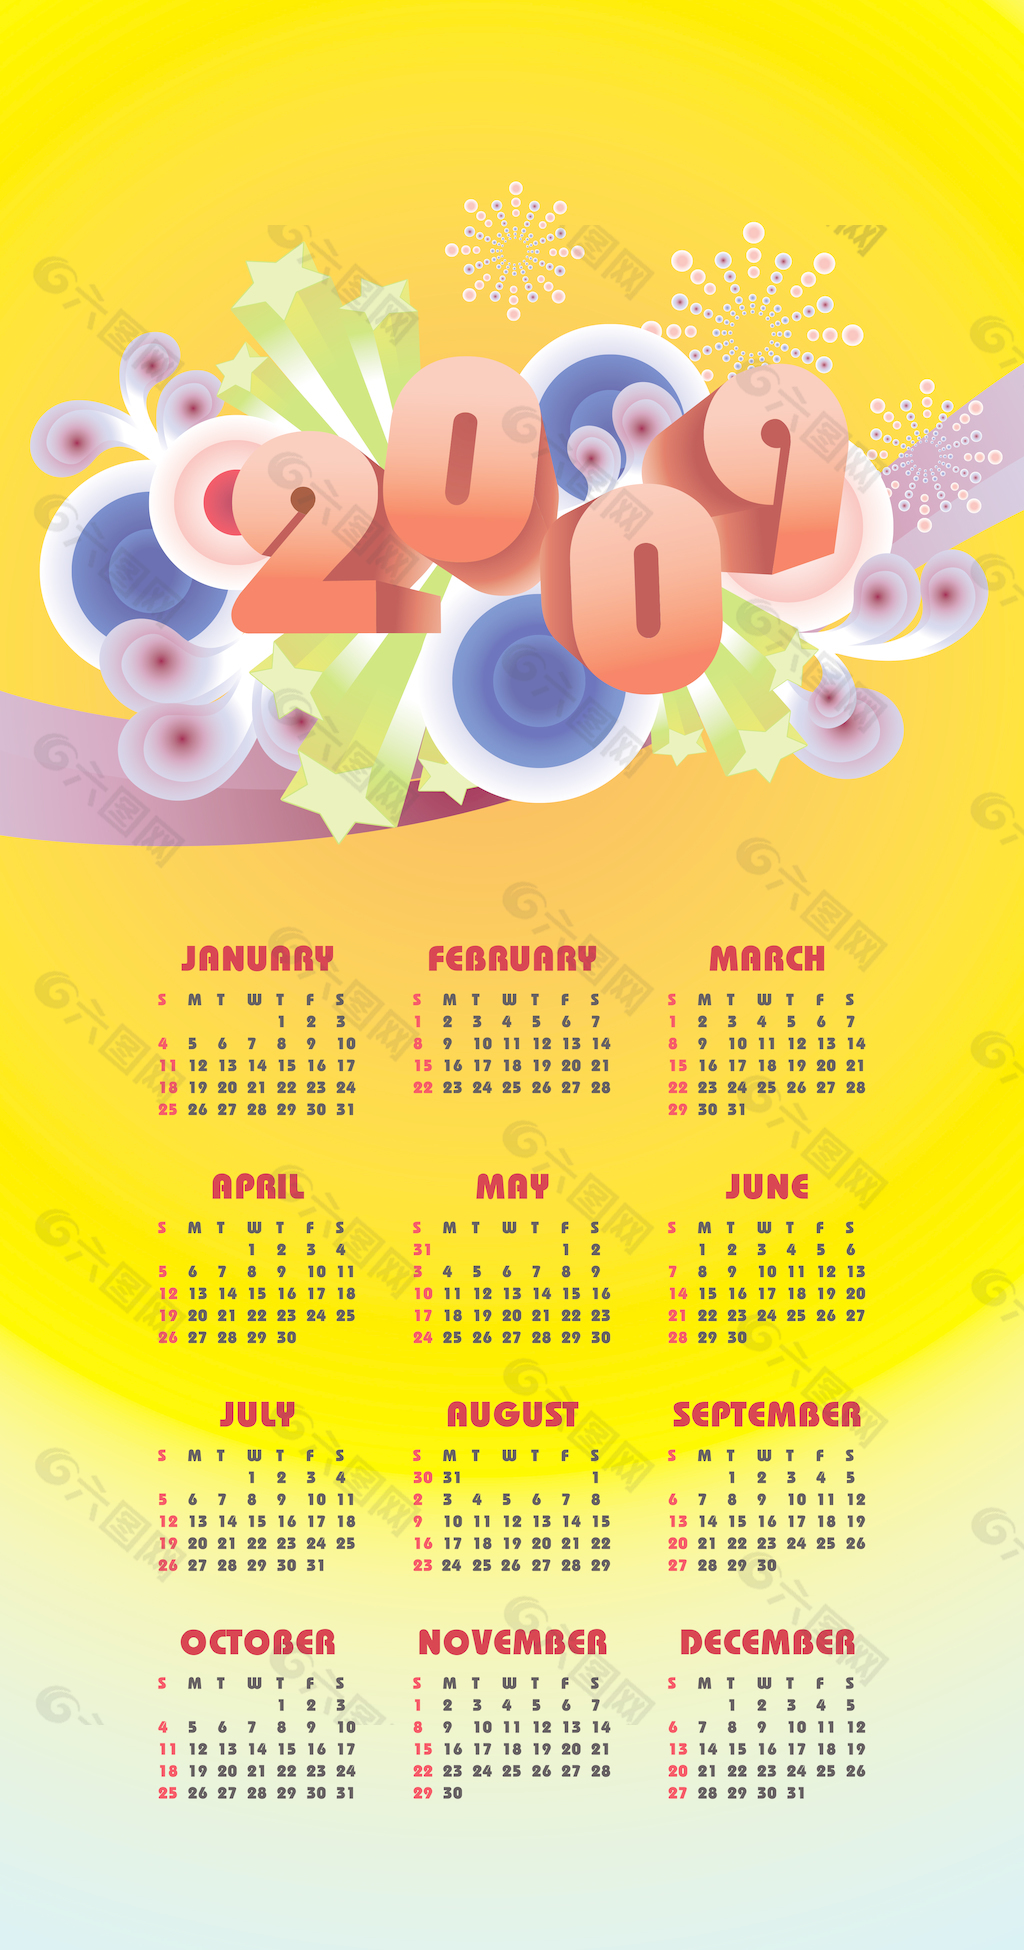 2009 - 12个月的日历